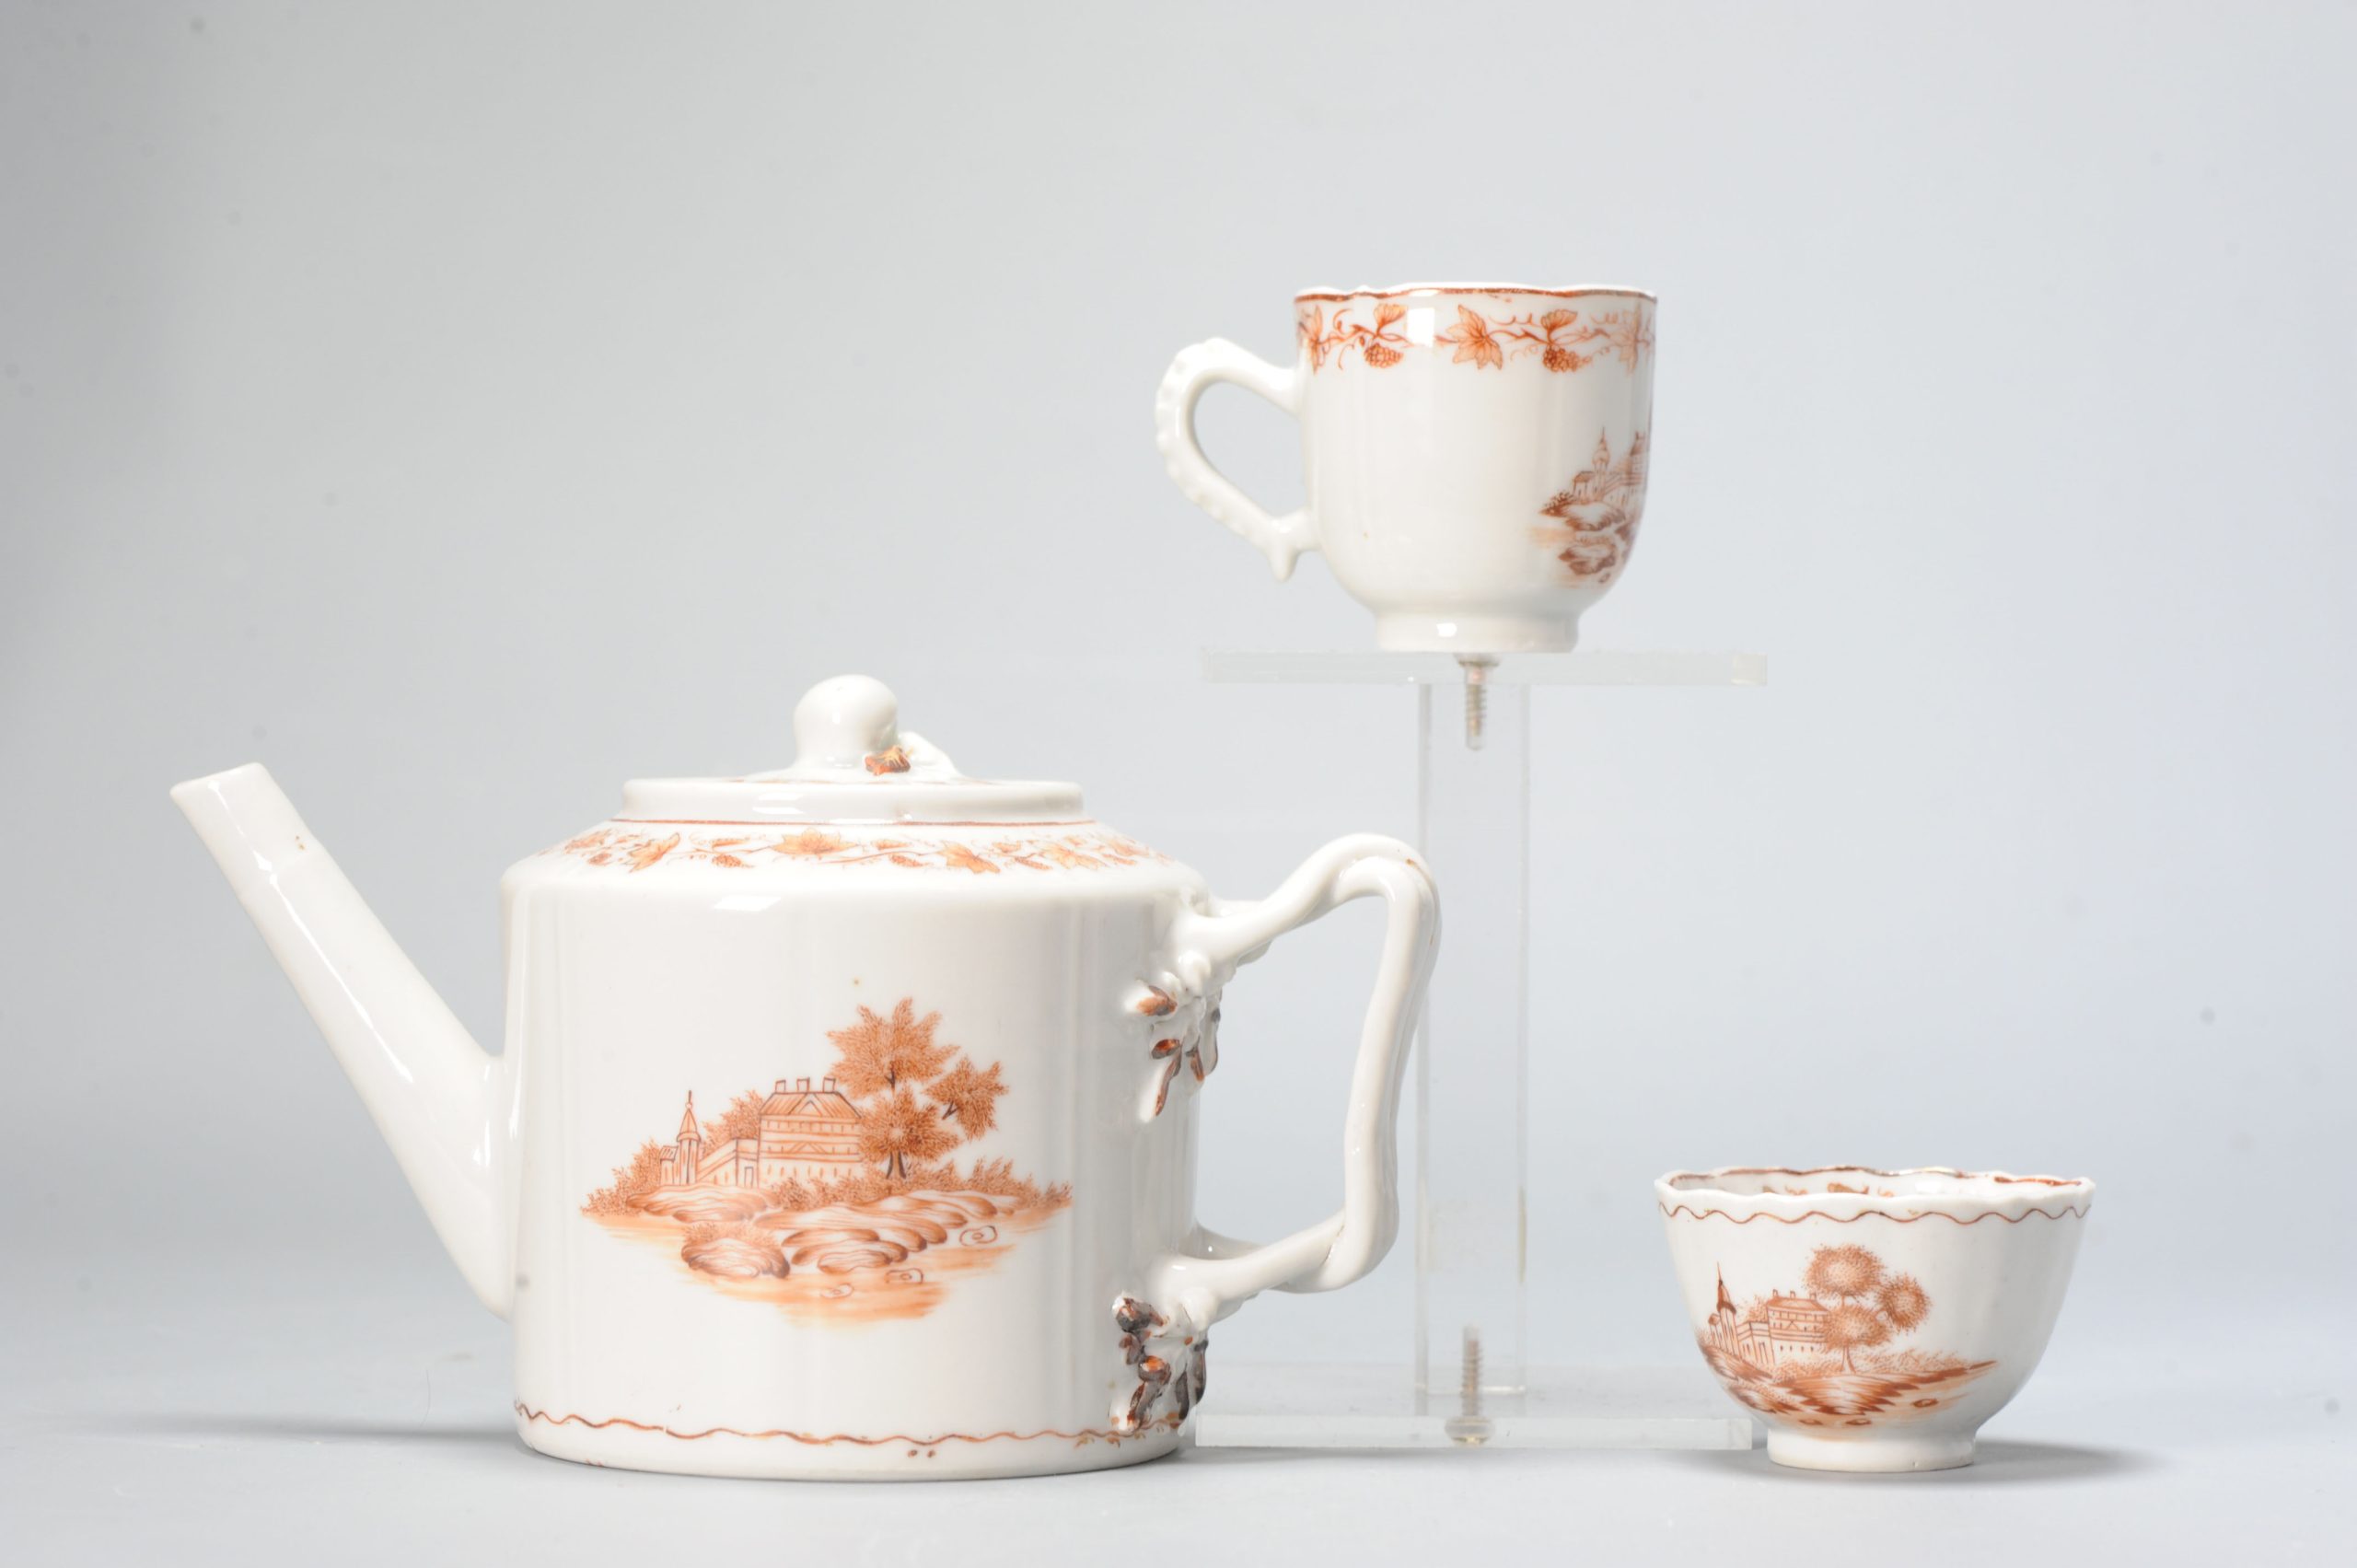 Antique 18C Chinese Porcelain Tea Set Teapot China Chine de Commande Qianlong Period